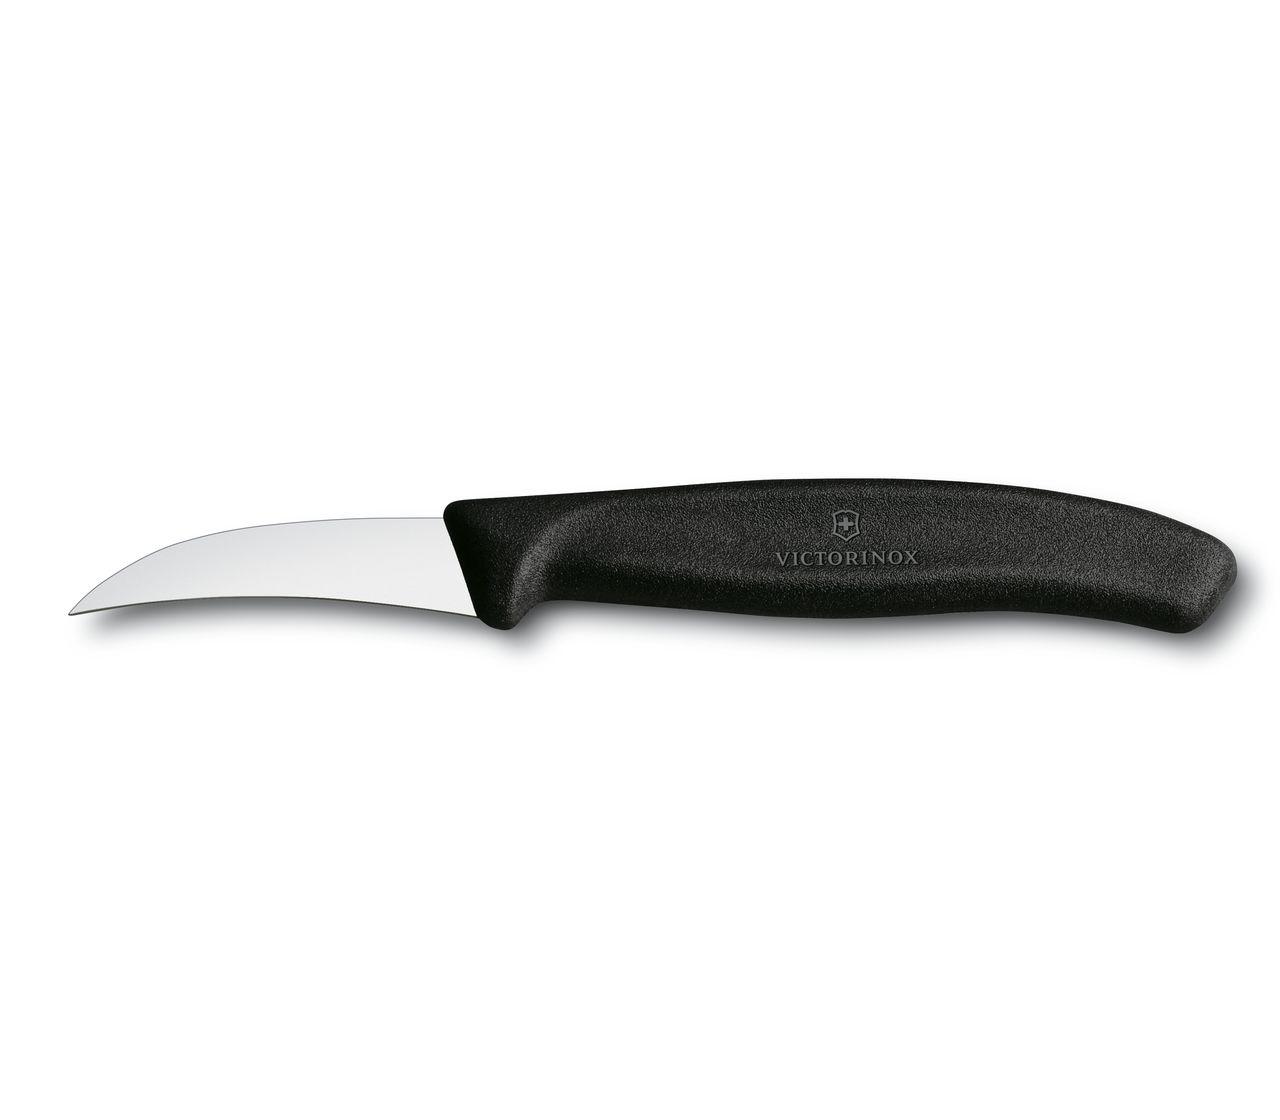 Couteau de cuisine bec d'oiseau Victorinox Swissclassic 6cm 6.7503